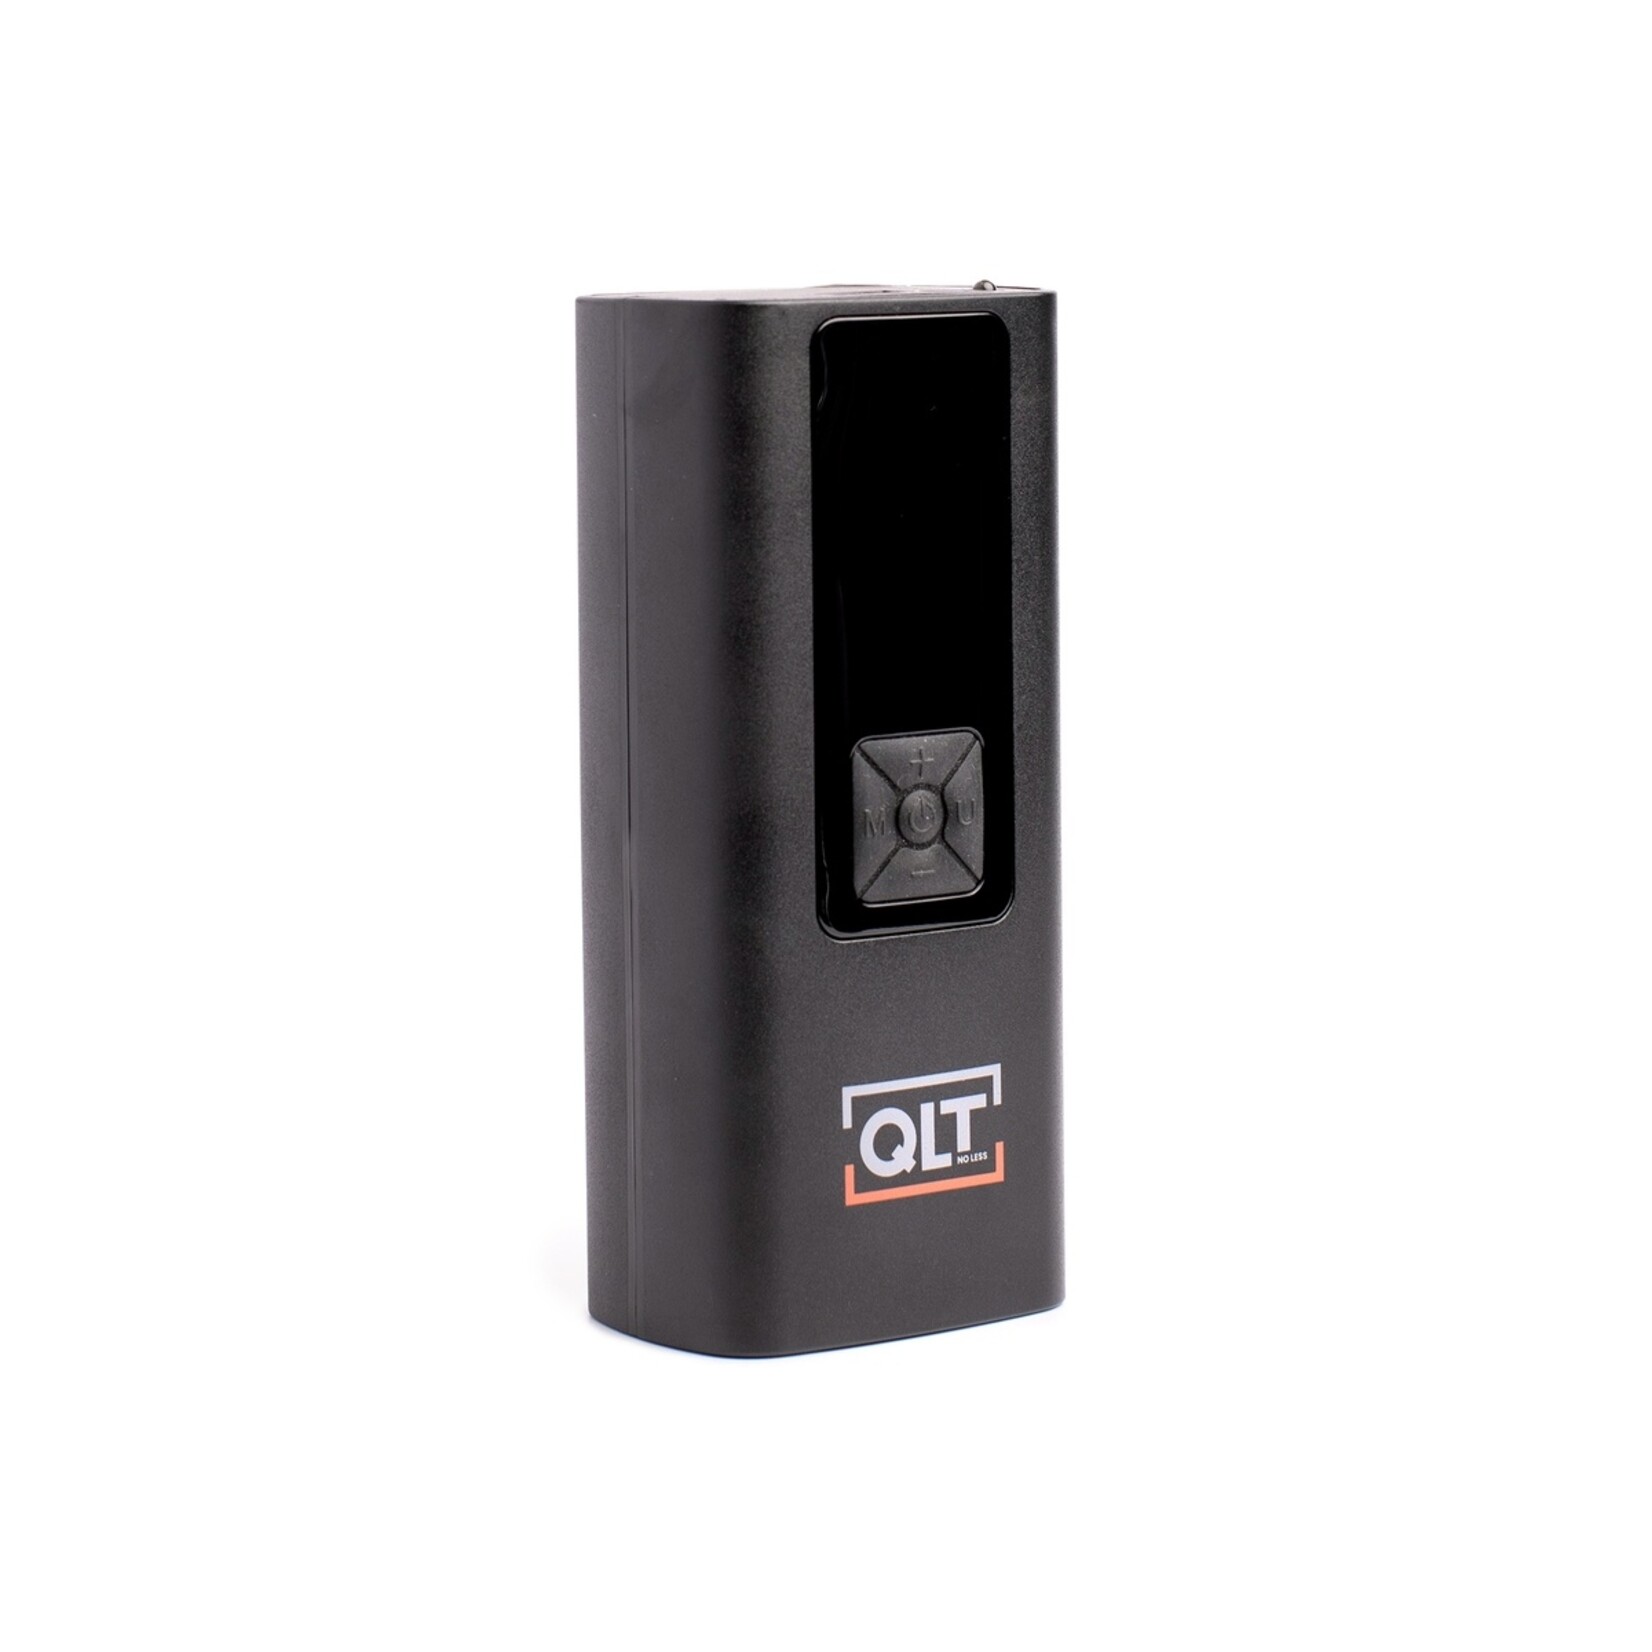 QLT QLT Luchtcompressor Pro en Powerbank incl. Opzetstukken en Oplaadkabel